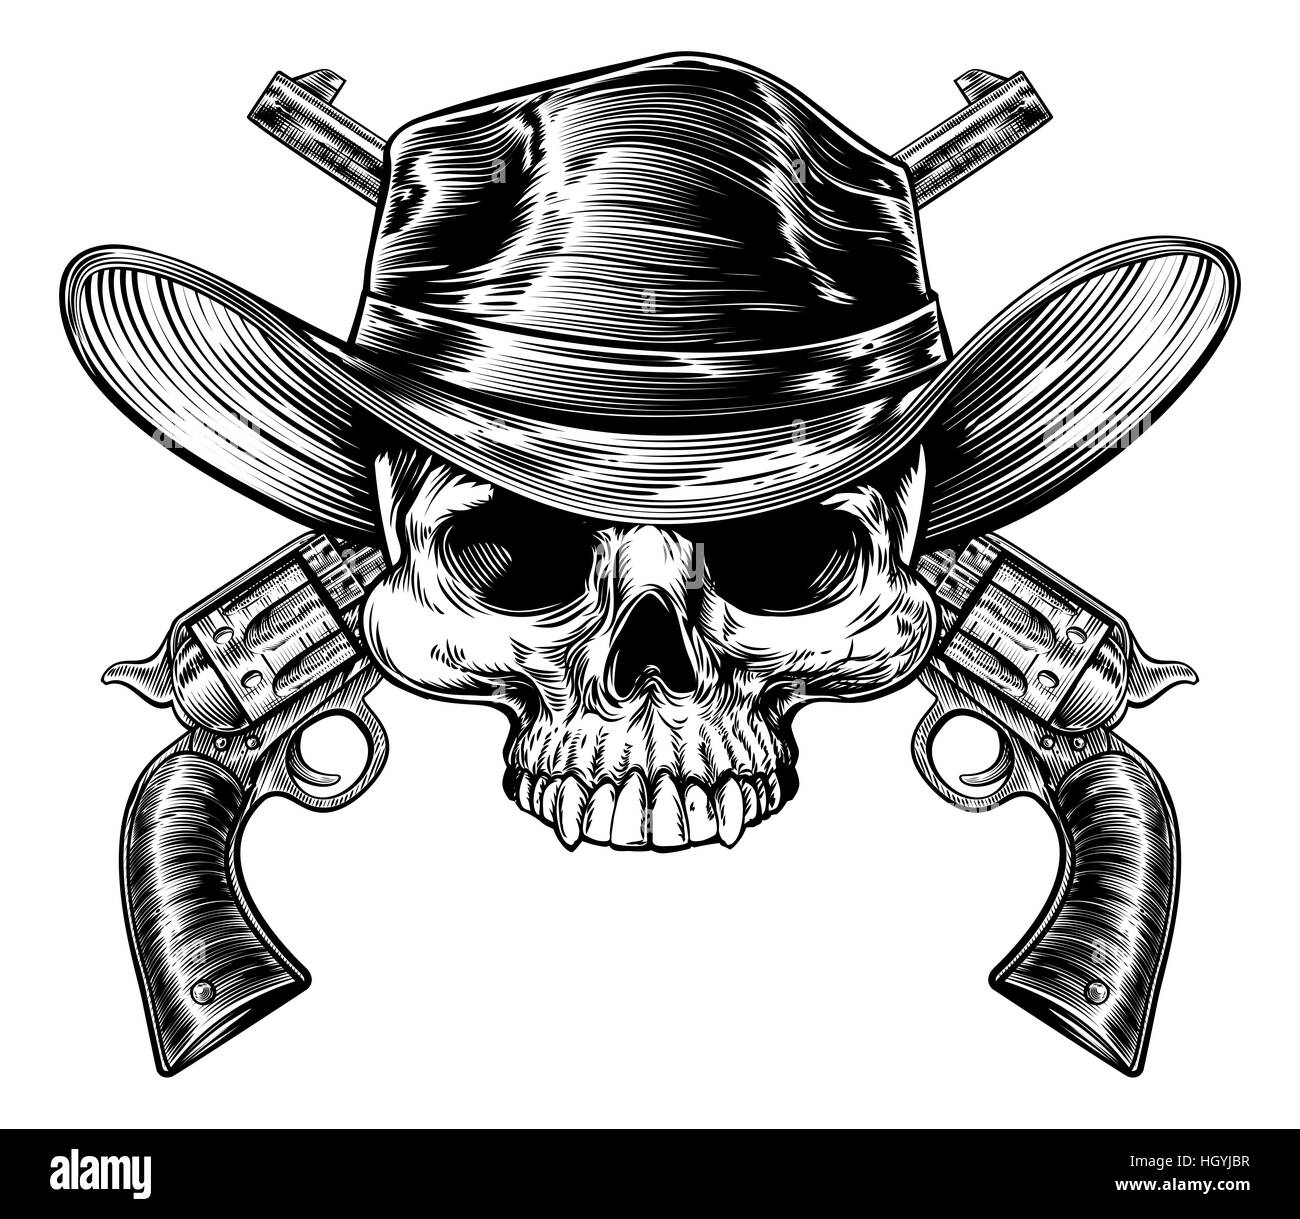 Cowboy-Schädel in einem western Hut und ein paar gekreuzt Pistole Revolver Pistole sechs Shooter Pistolen gezeichnet in einem Vintage-retro-Holzschnitt geätzt oder graviert Stil Stockfoto